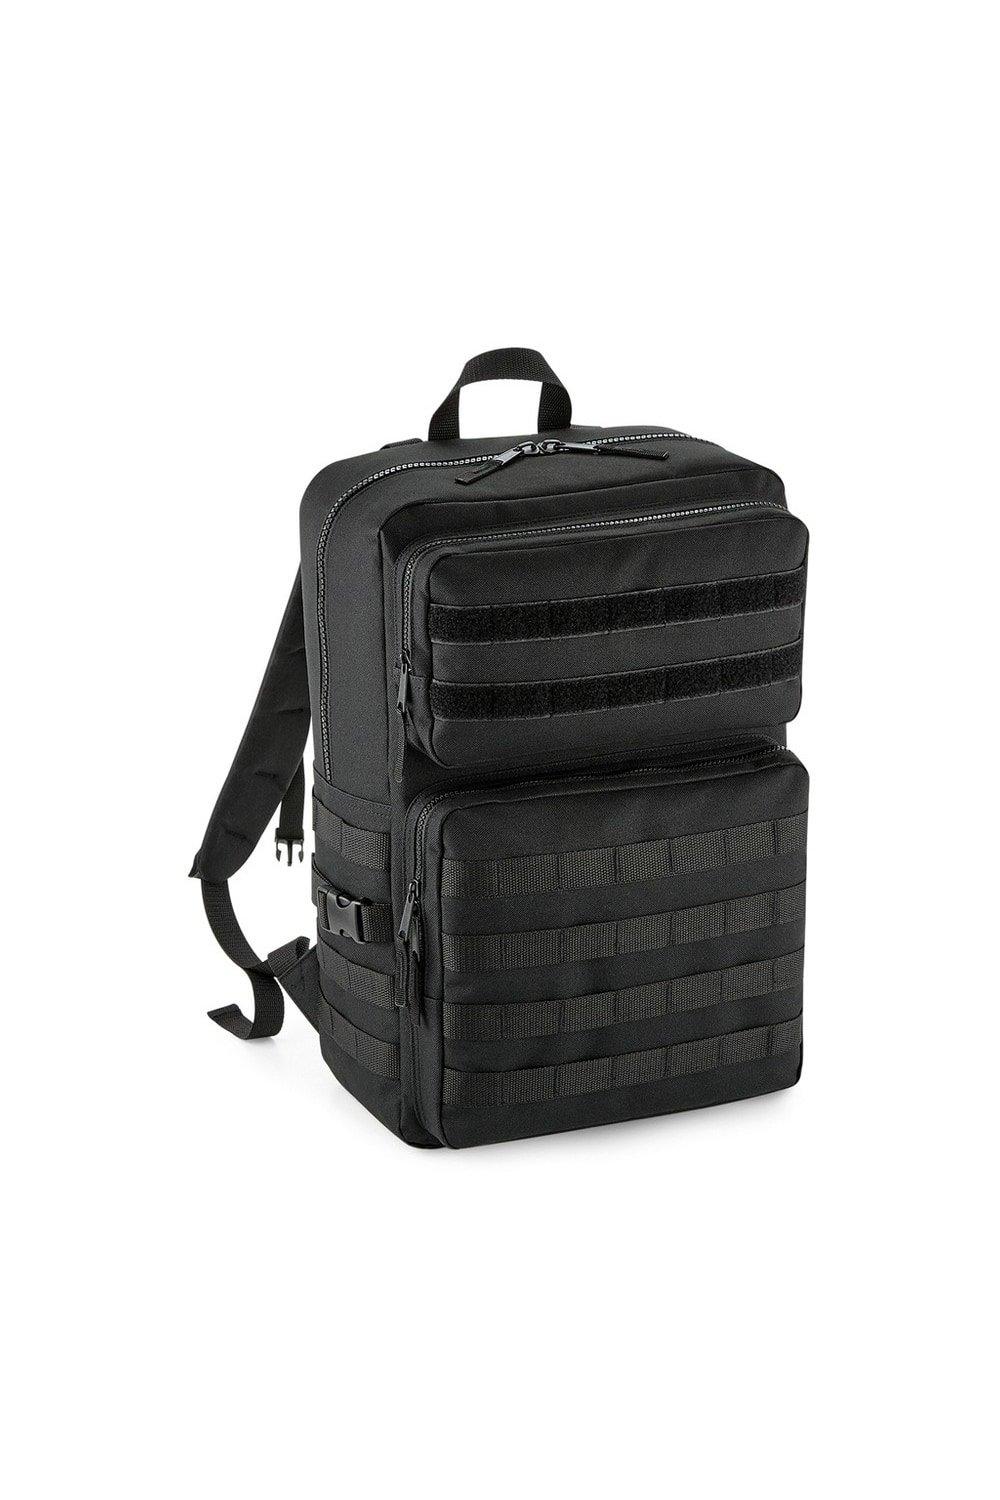 Тактический рюкзак MOLLE Bagbase, черный huntvp 1000d тактический рюкзак 45l molle рюкзак штурмовой пакет открытый кемпинг туризм рюкзак открытый рюкзак черный